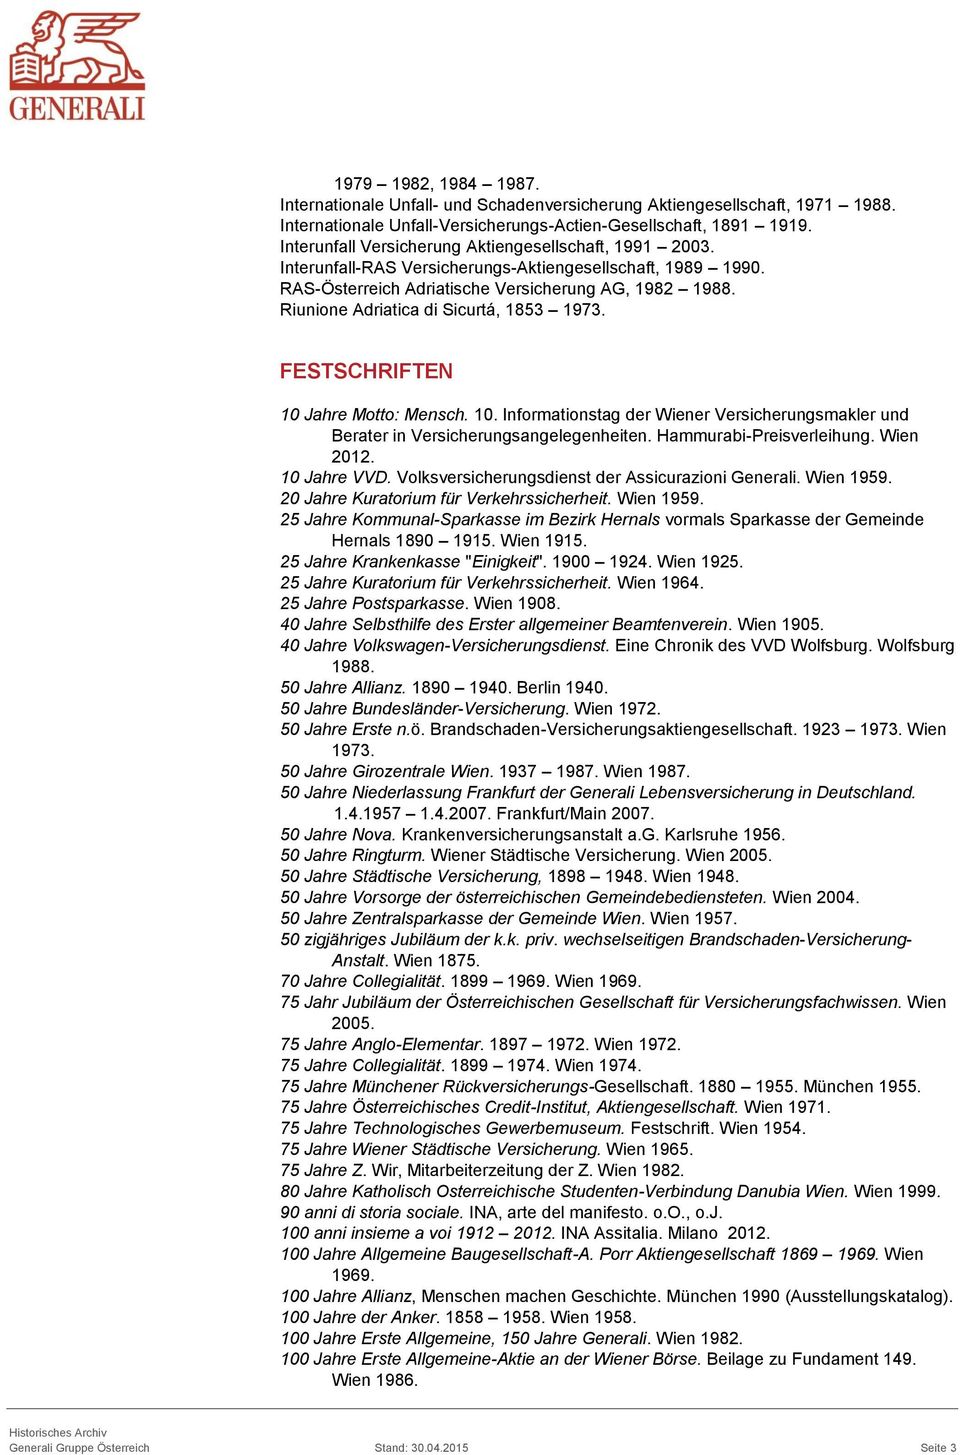 Riunione Adriatica di Sicurtá, 1853 1973. FESTSCHRIFTEN 10 Jahre Motto: Mensch. 10. Informationstag der Wiener Versicherungsmakler und Berater in Versicherungsangelegenheiten.